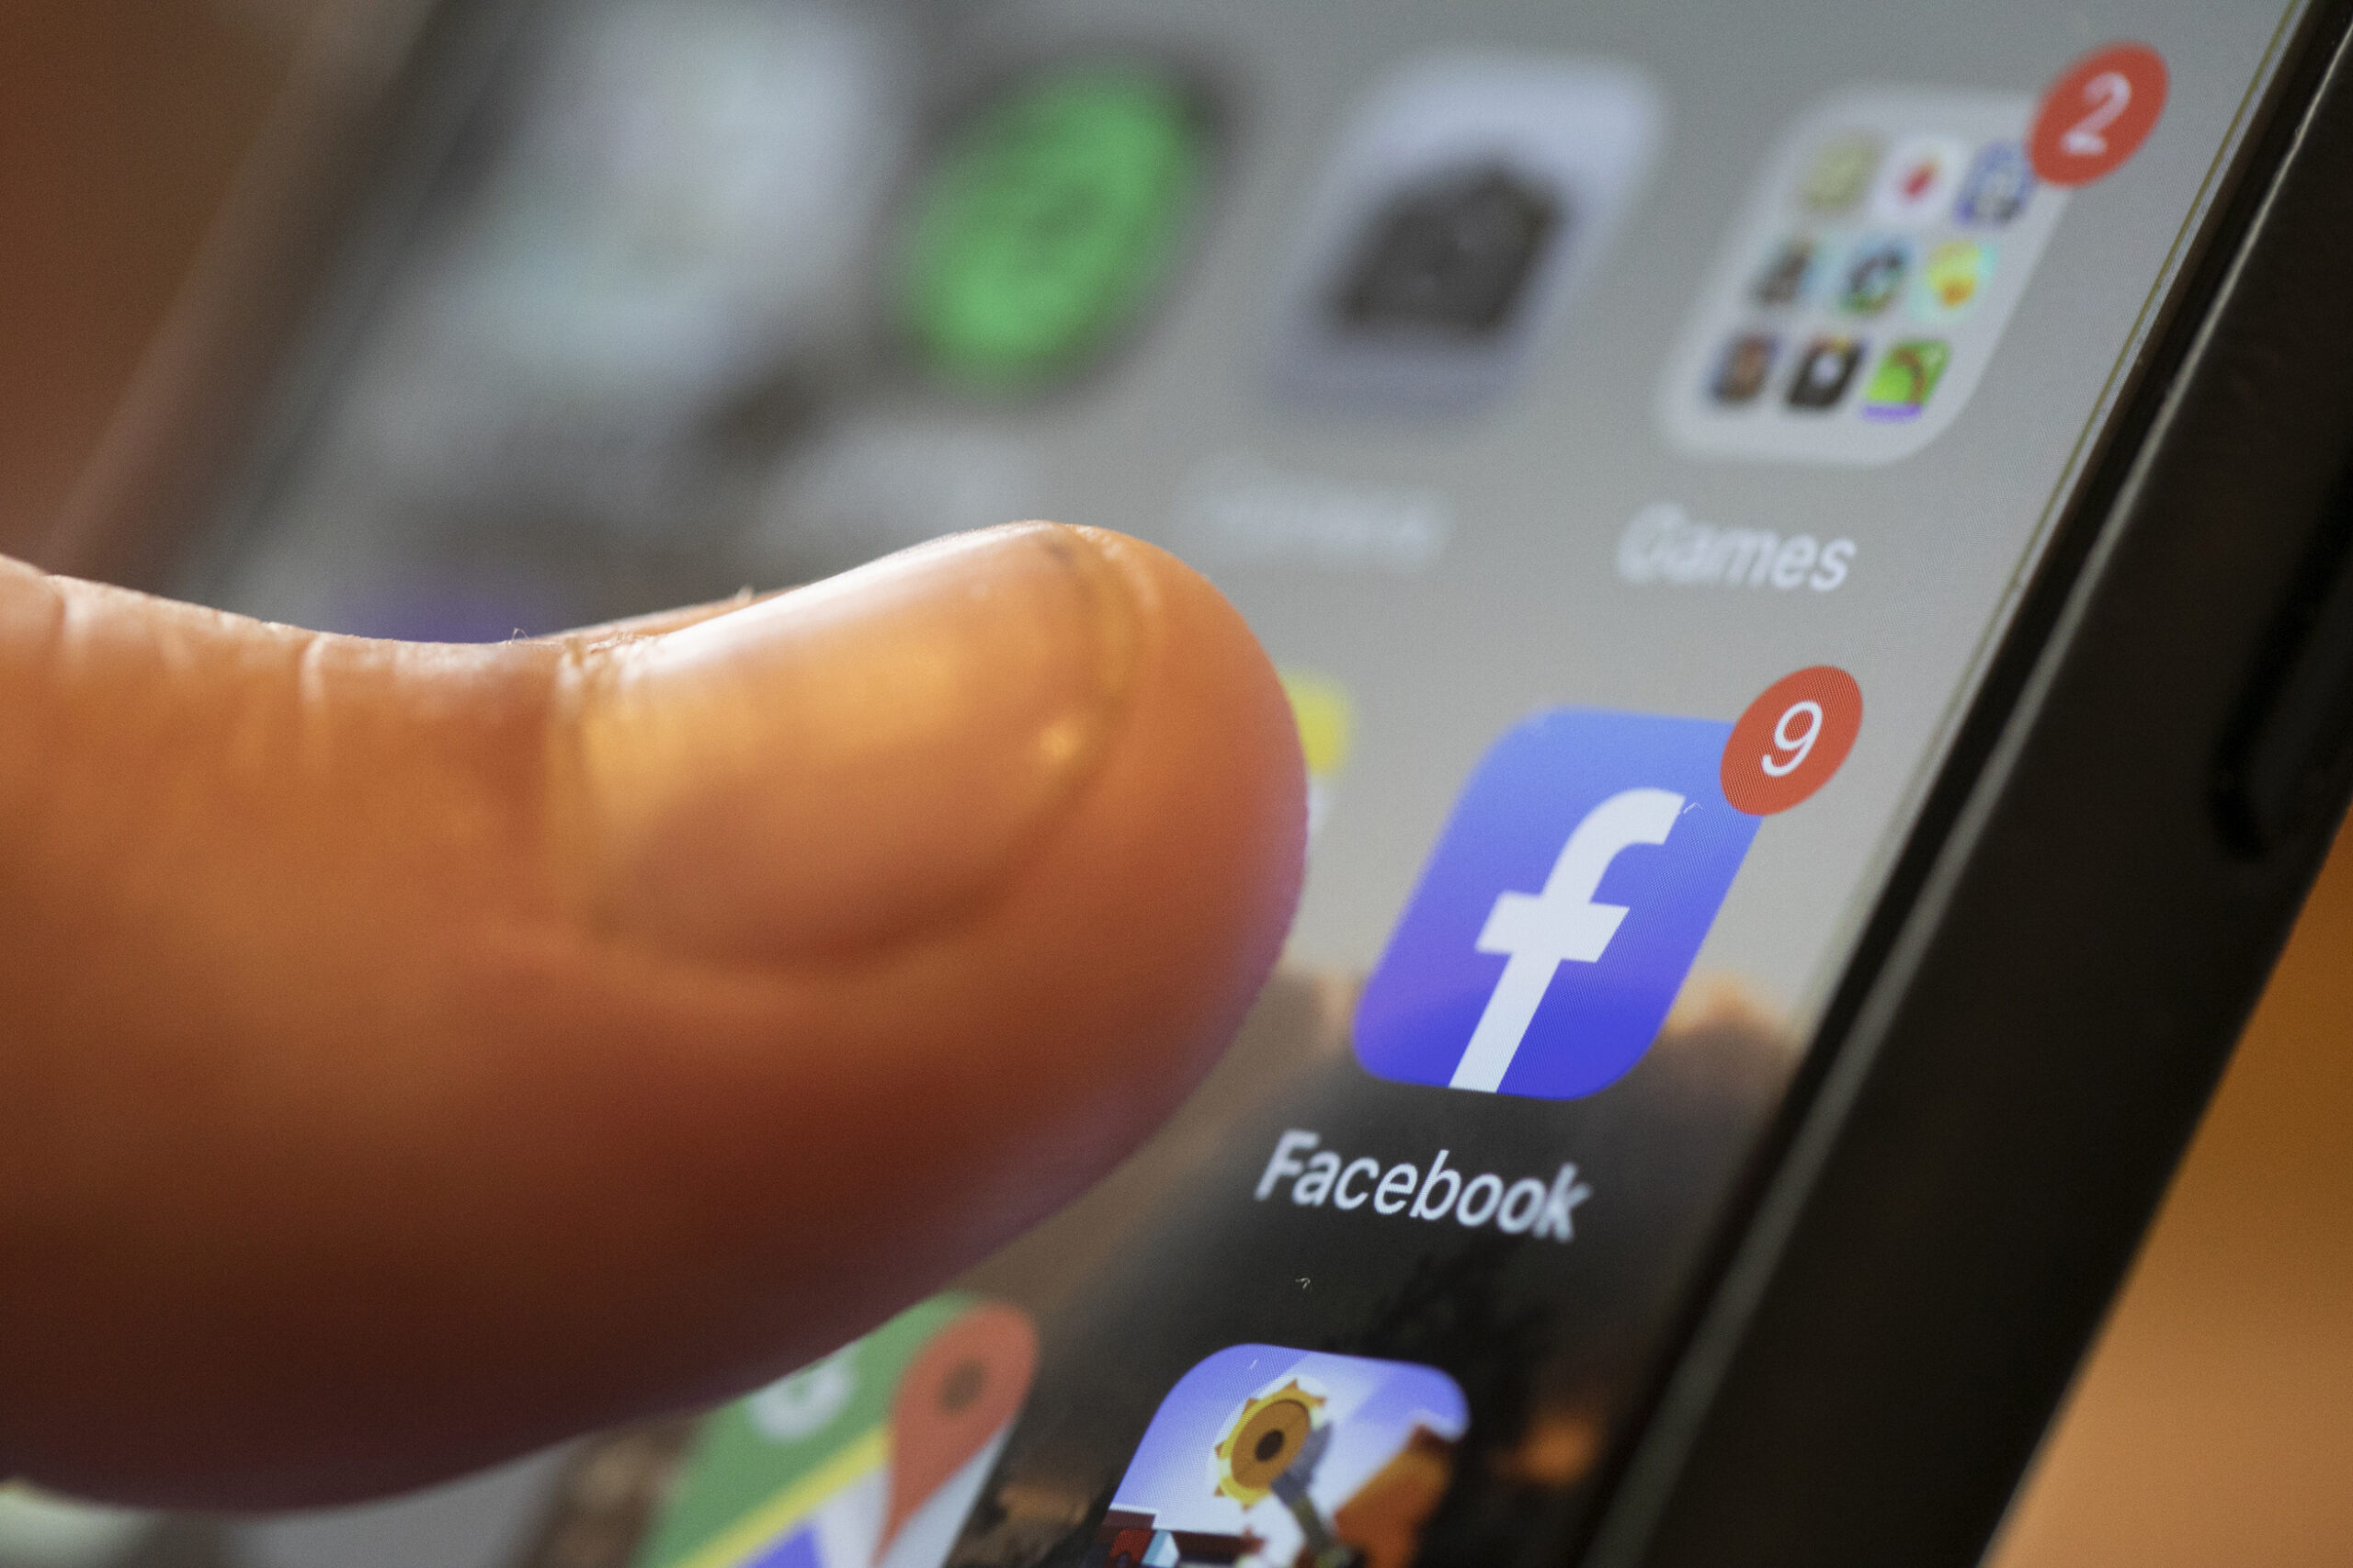 An iPhone displays the Facebook app